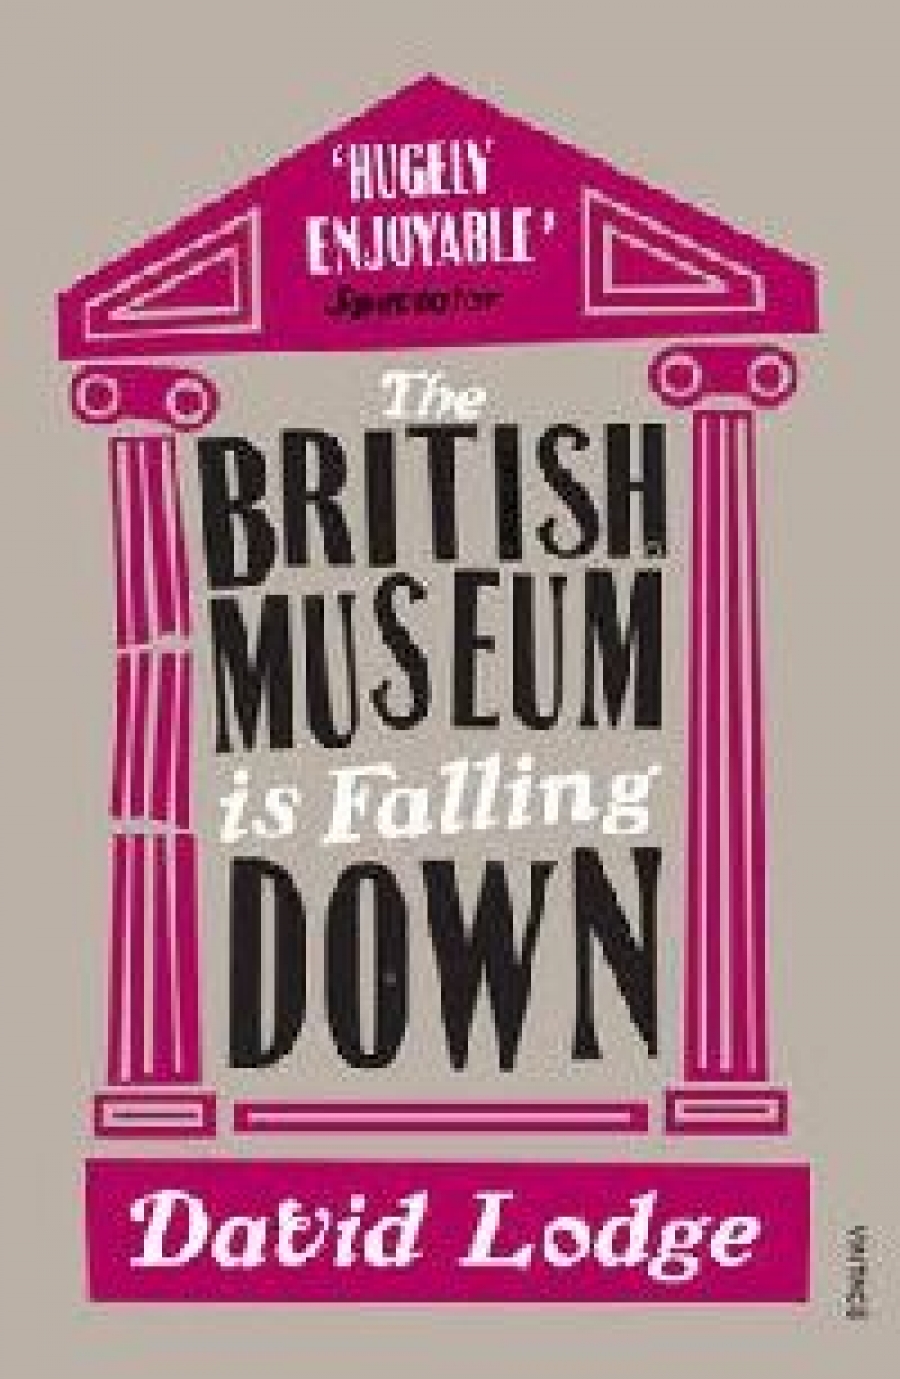 Lodge David British Museum is Falling Down 